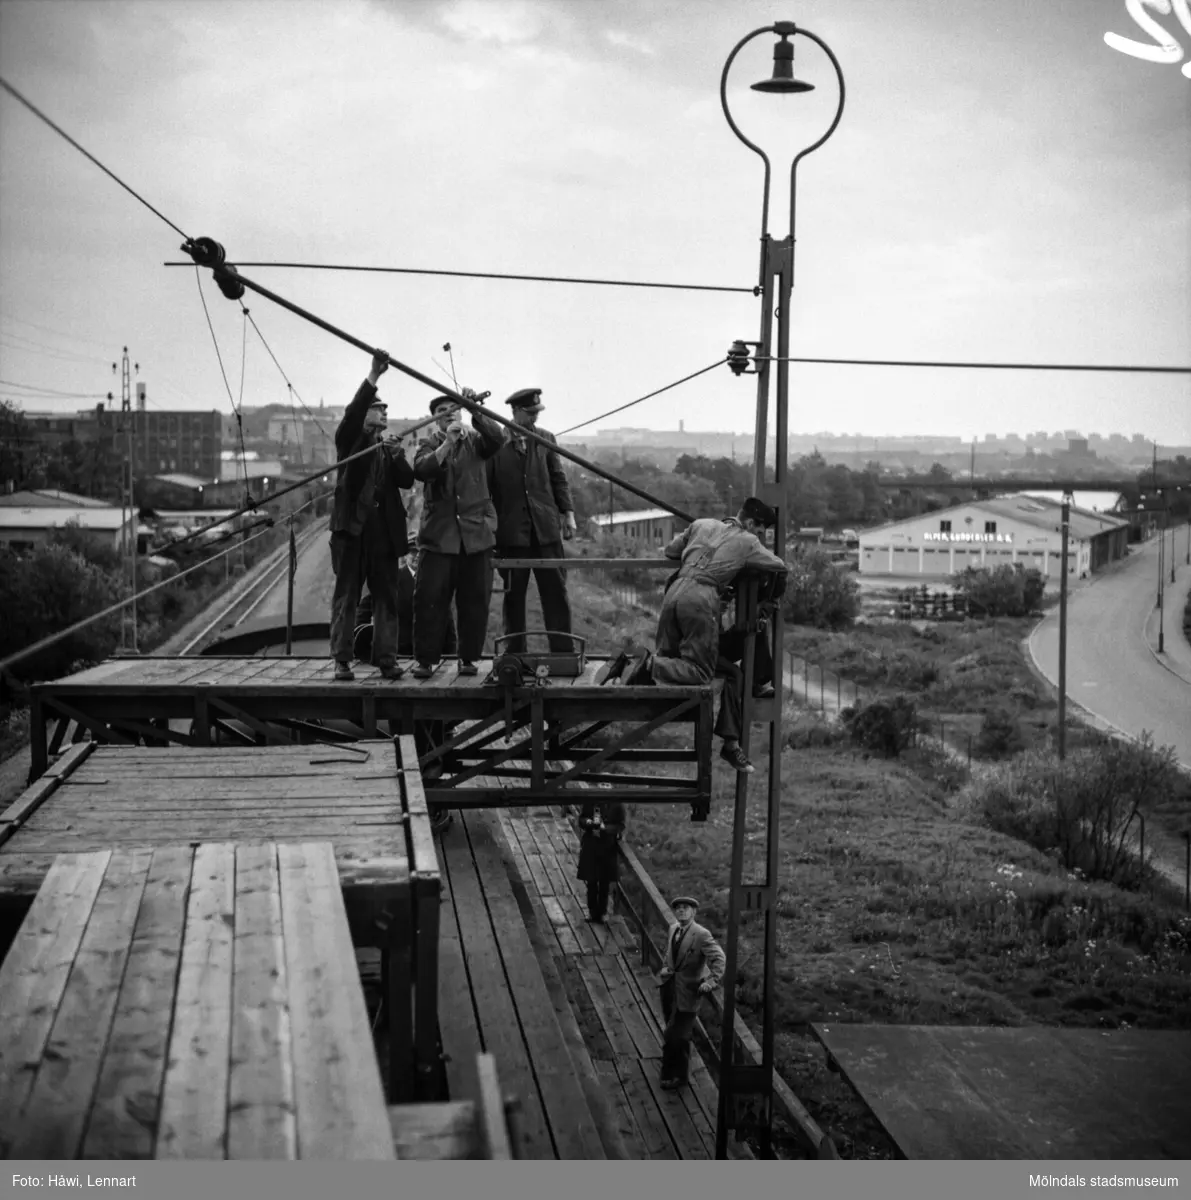 Transport av pappersbruket Papyrus PM2 yankeecylinder. Cylindern fraktas på järnvägen mot Mölndal, 2/6 1956.